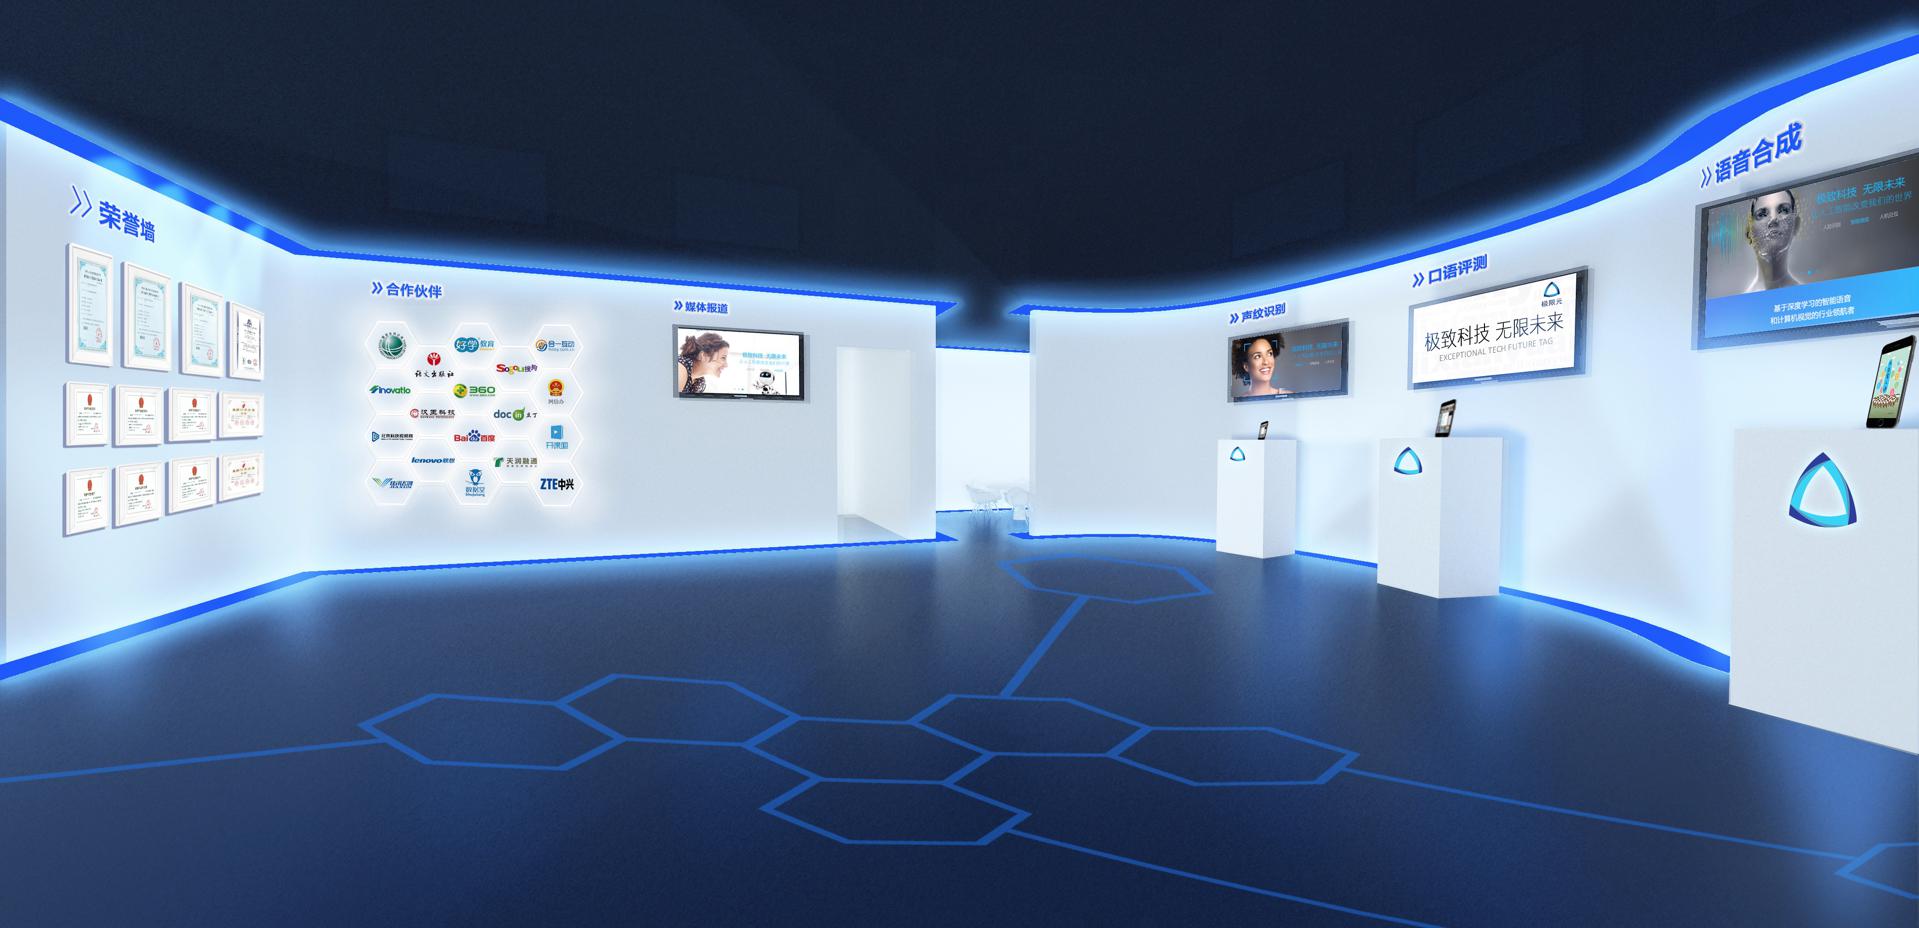 浙江万物互联VR虚拟展厅带您穿越浙江的历史与现实